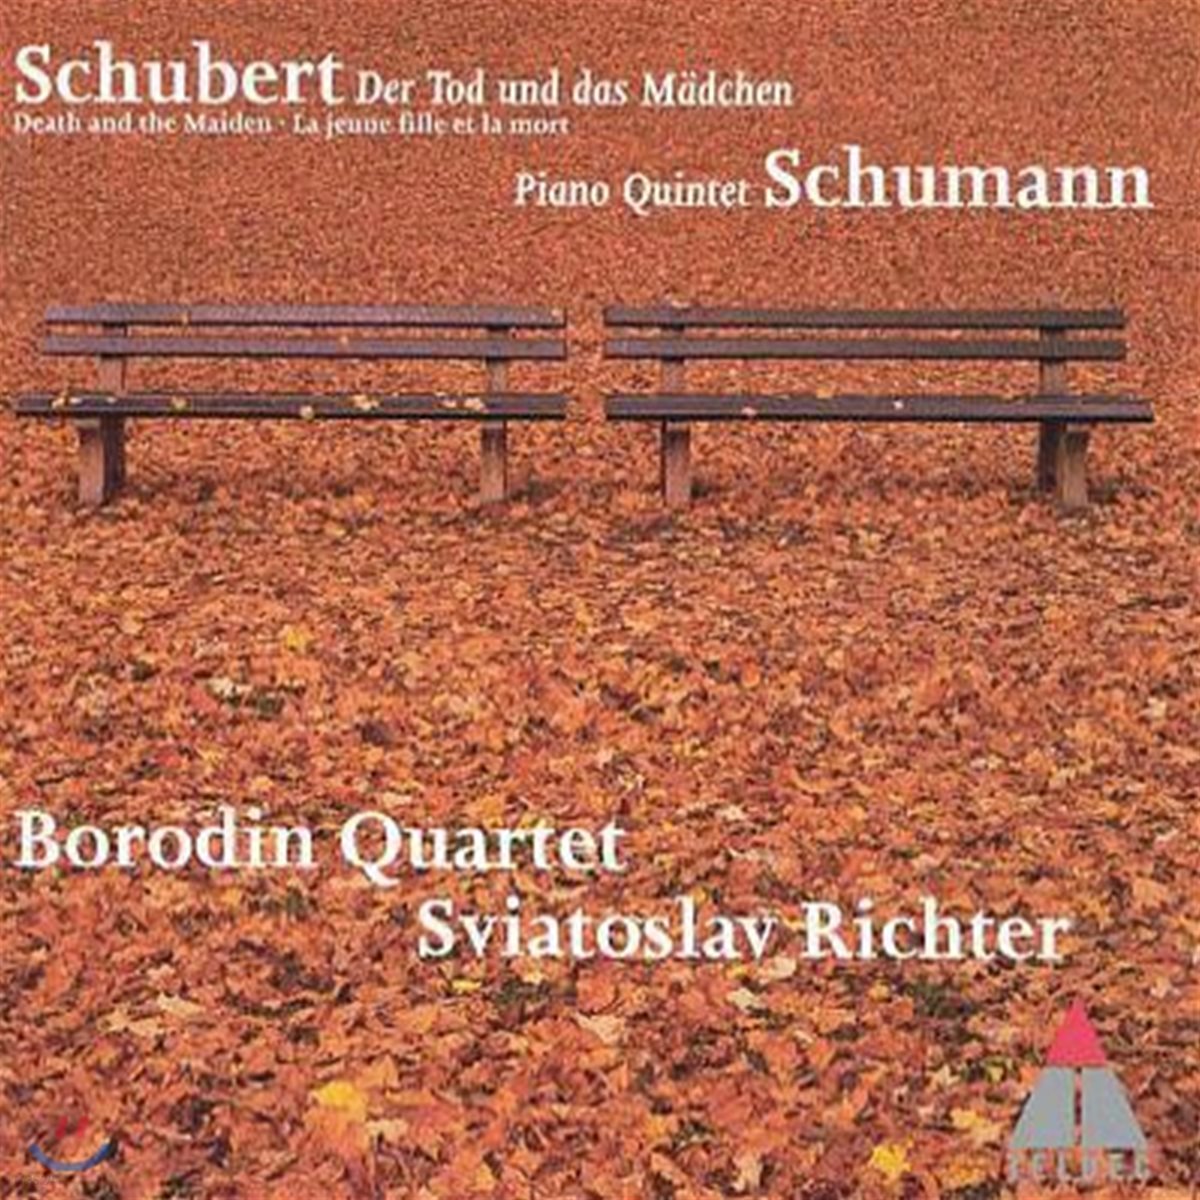 [중고] Borodin Quartet / Schubert String Quartet No.14, Schumann Piano Quintet in E flat major, op.44 (0630182532)